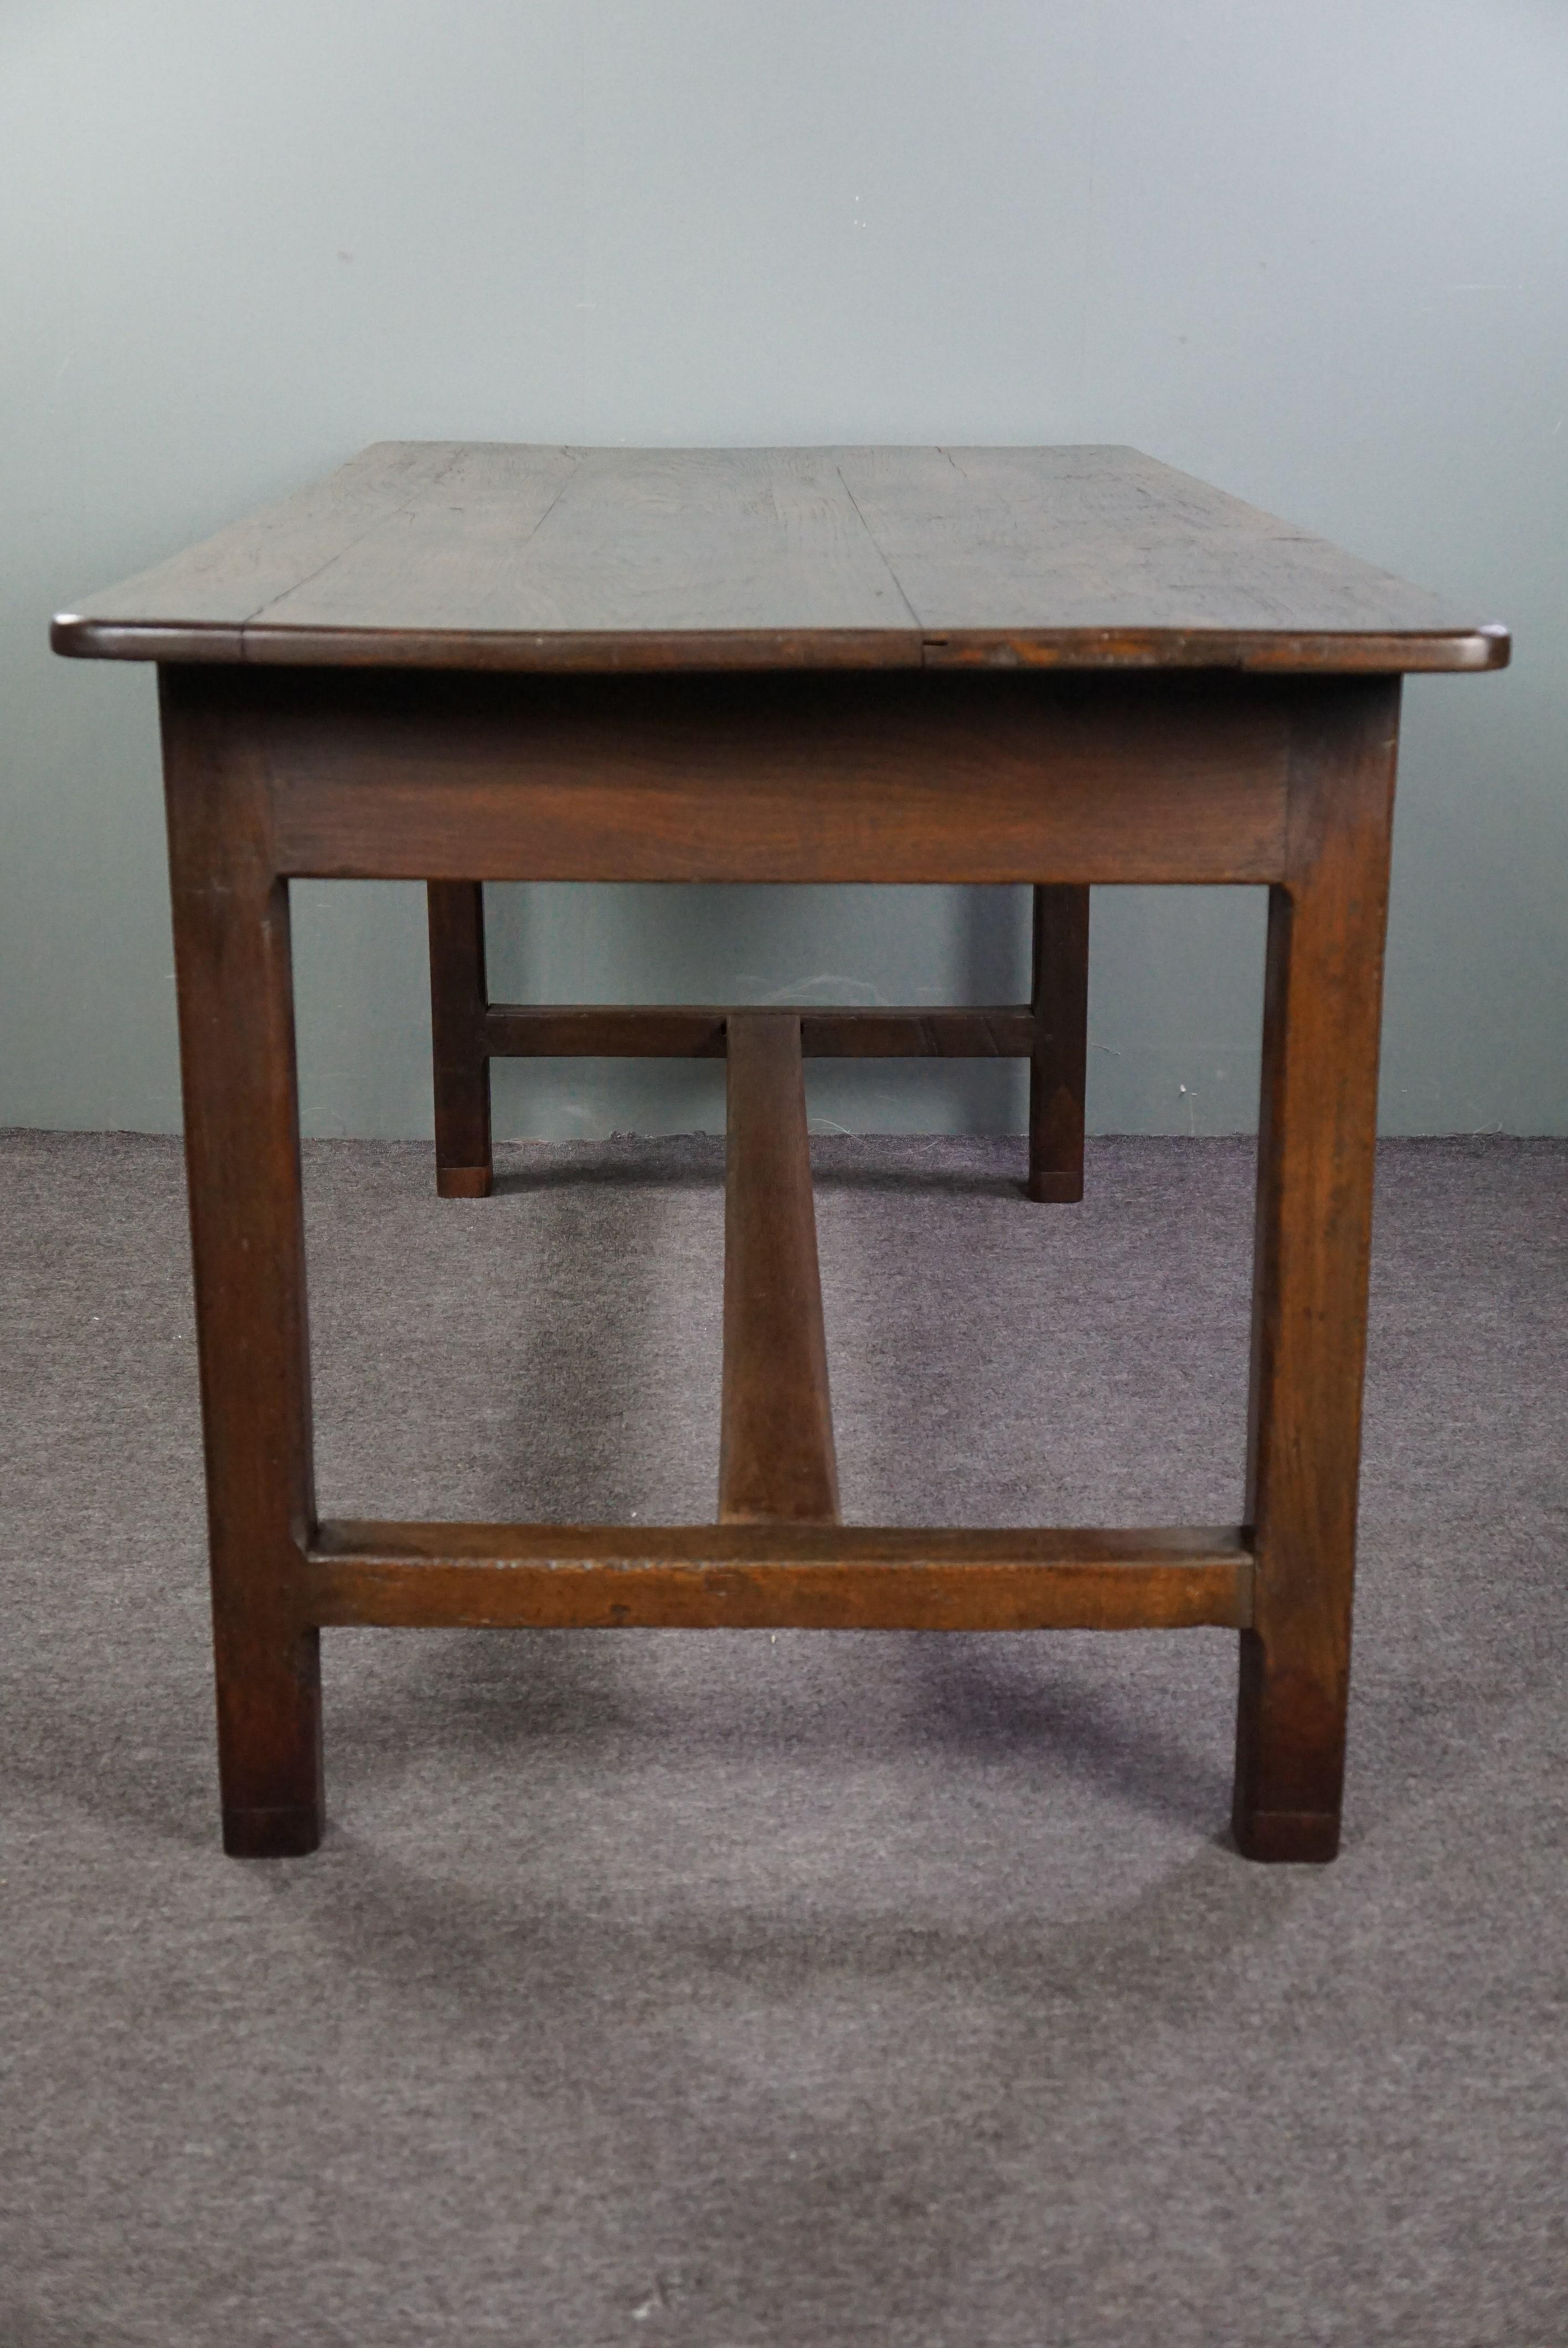 Nous vous proposons cette robuste table de salle à manger française ancienne, fabriquée en bois de chêne au début du XVIIIe siècle. Cette magnifique table de salle à manger antique pure a un aspect robuste fantastique et s'intègre parfaitement dans